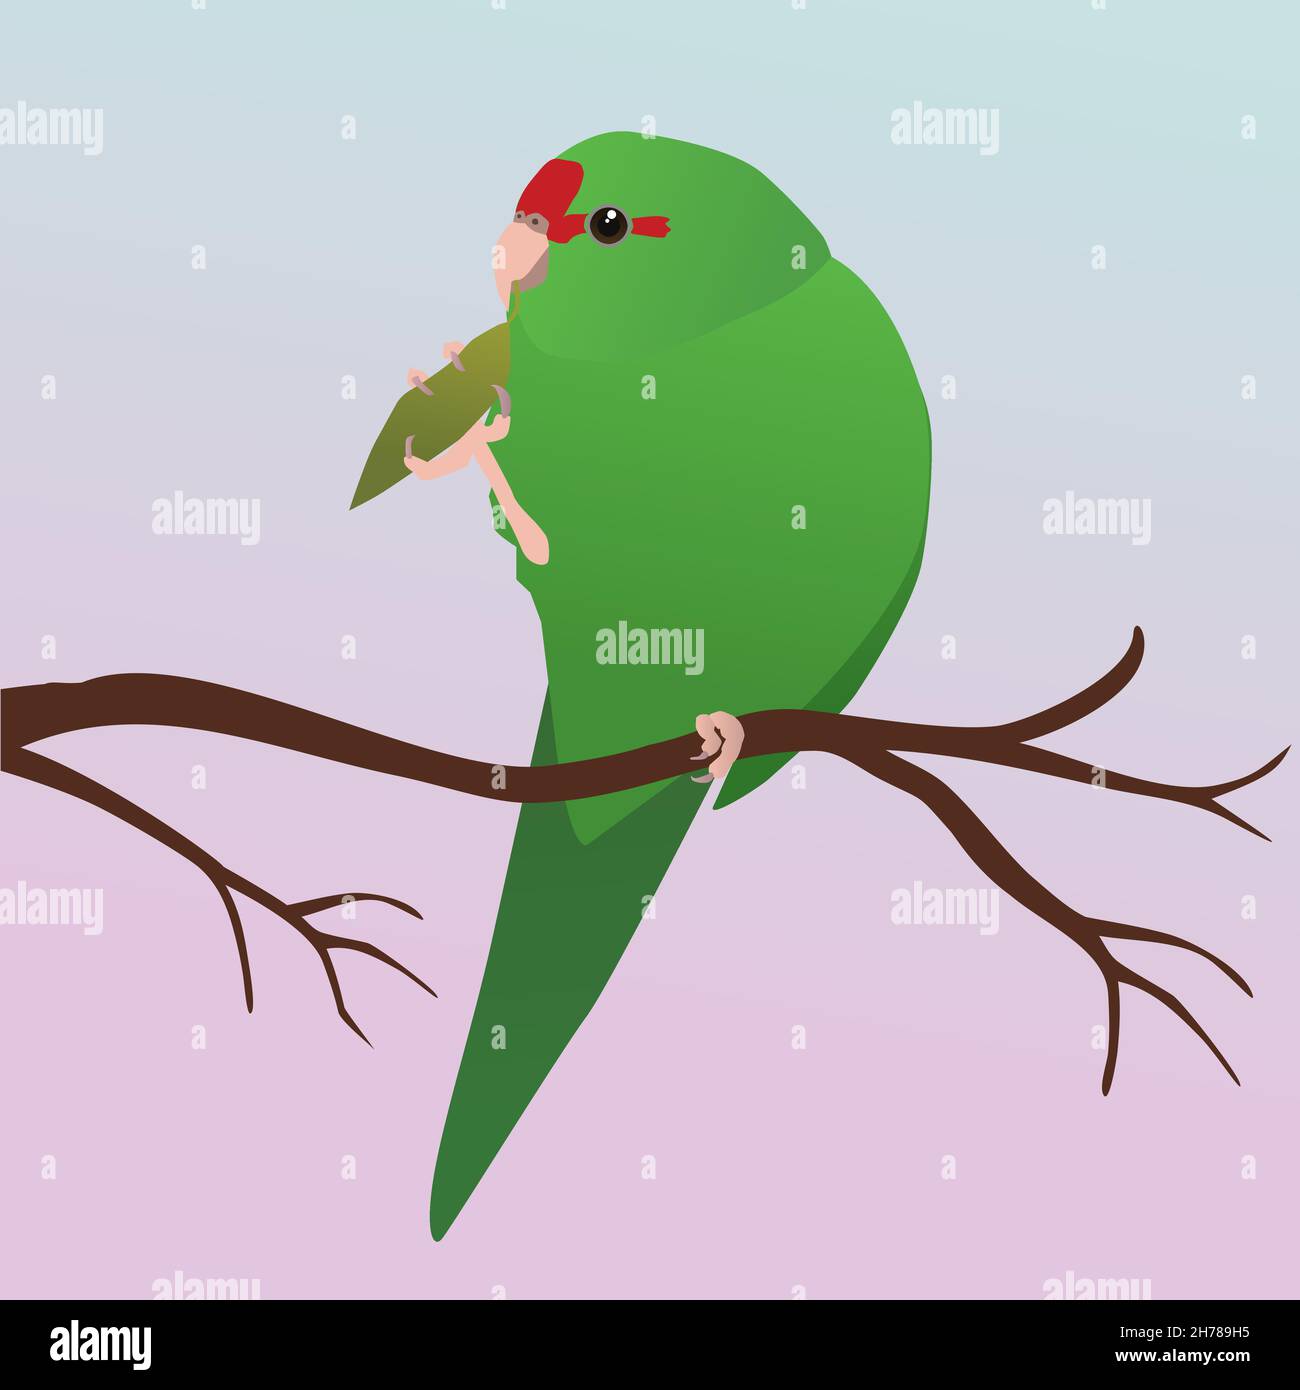 Eine Vektordarstellung eines roten gekrönten Sittichs. Der Vogel ist grün und hat eine rote Stirn. Sie sitzt auf einem Ast und hält ein Blatt mit einem Bein Stock Vektor